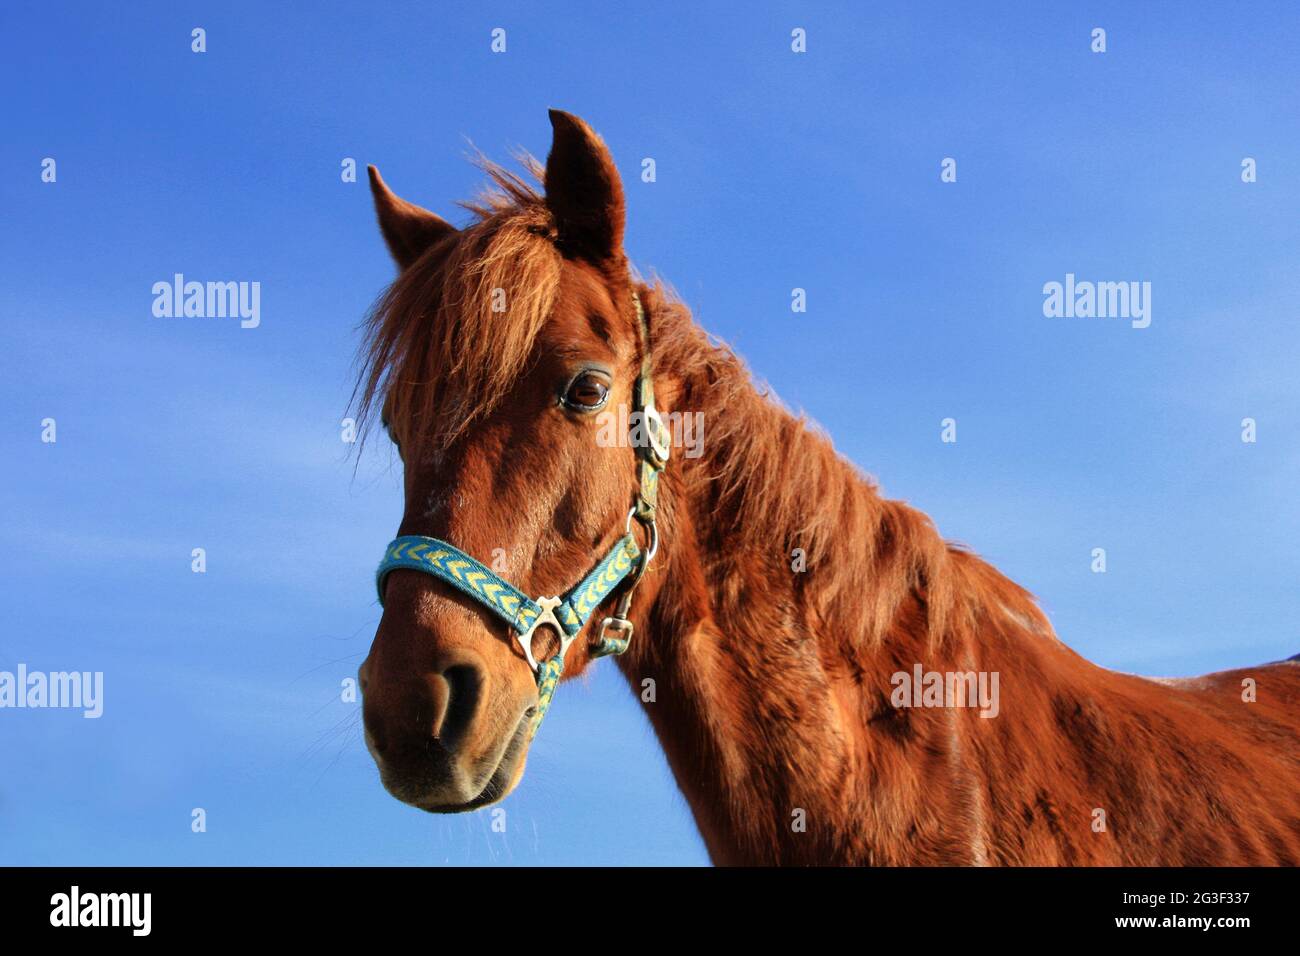 Equus ferus caballus - Riding horse Stock Photo